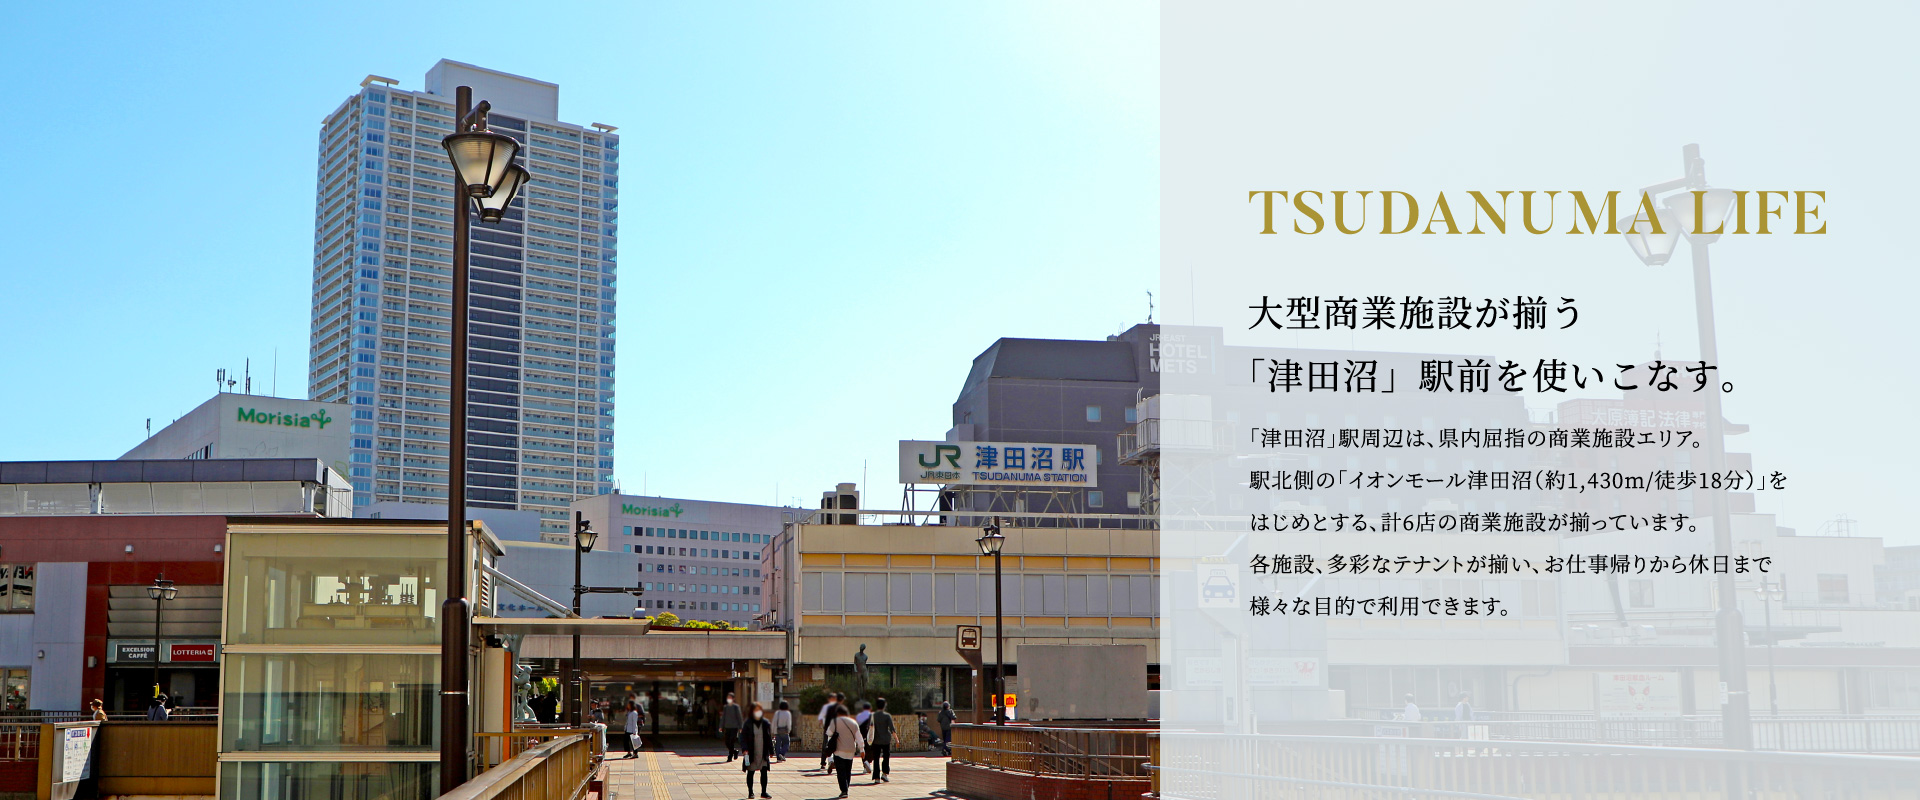 大型商業施設が揃う「津田沼」駅前を使いこなす。